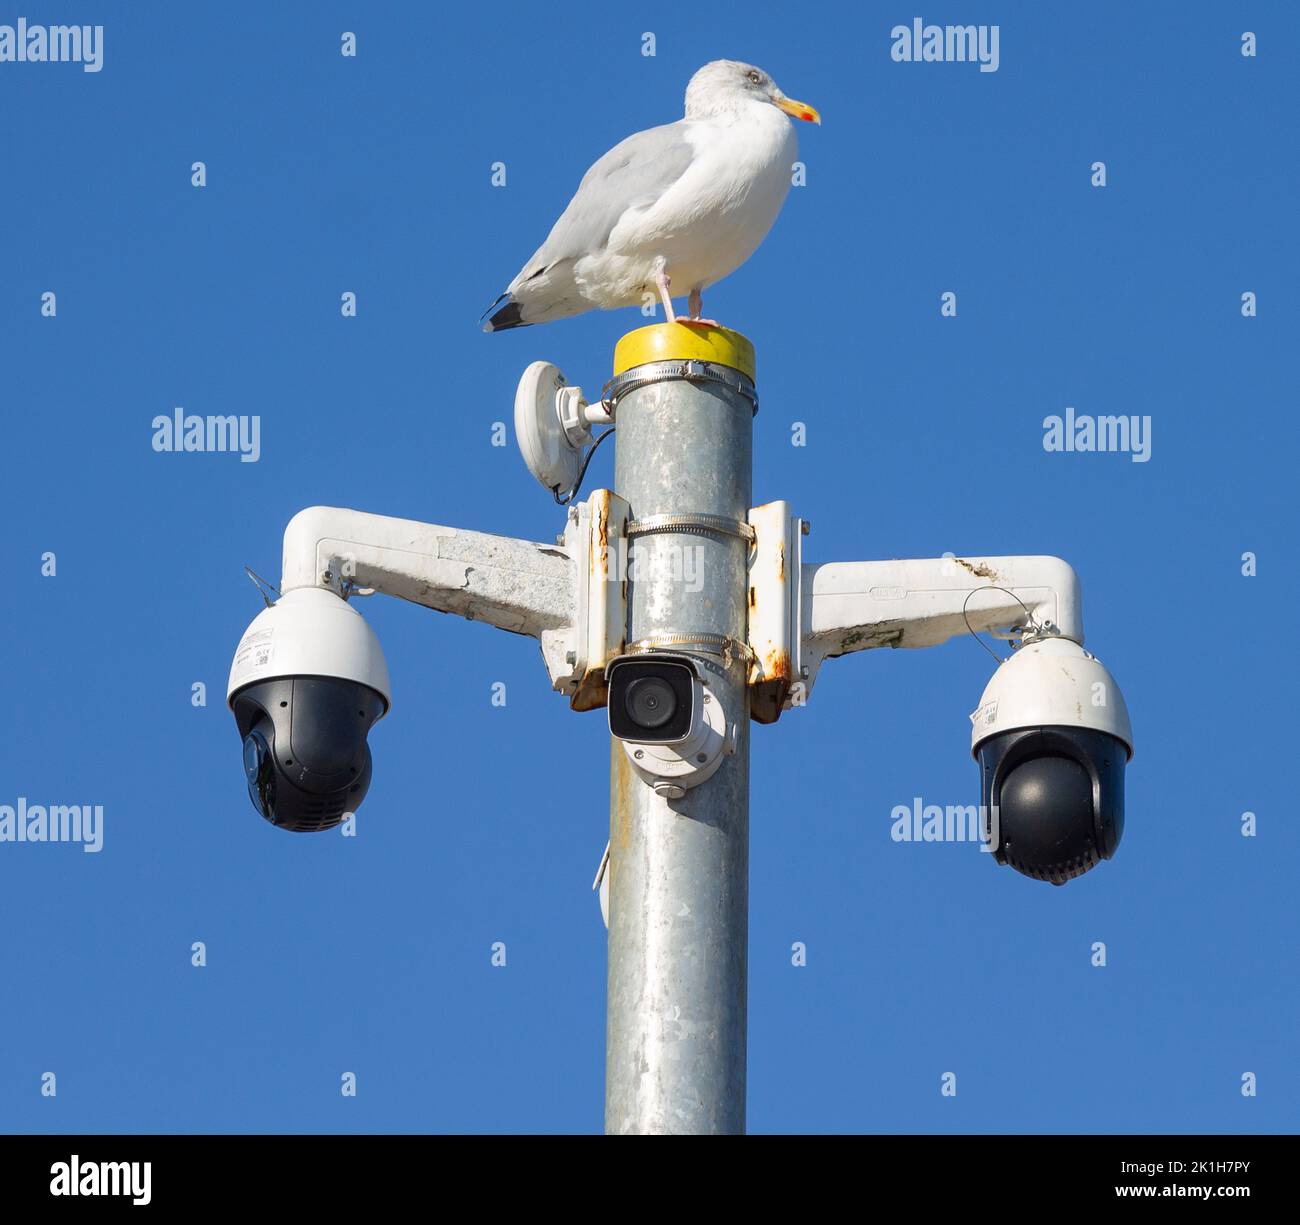 Gaviota encaramada en la torre de la cámara de seguridad contra el cielo azul Foto de stock